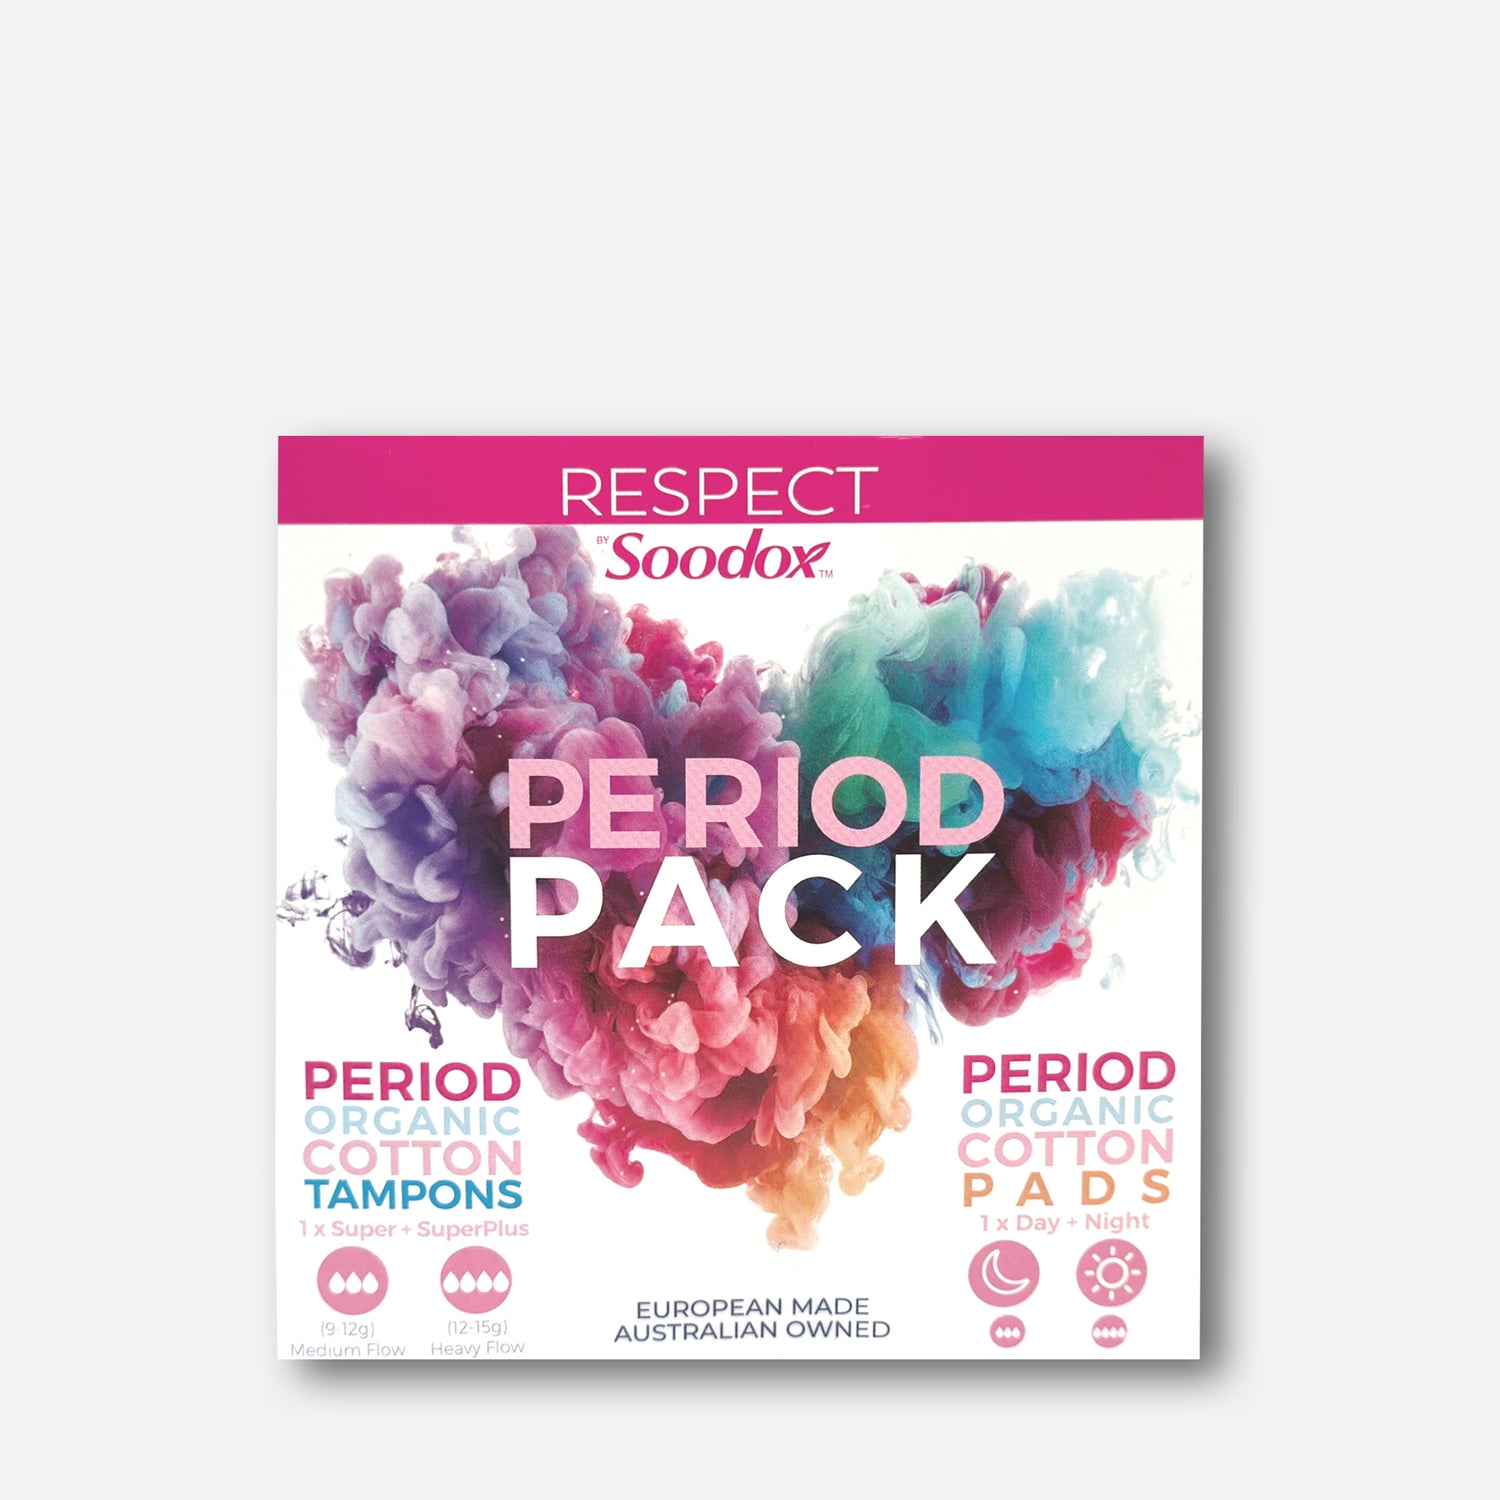 Tampon &amp; Pad Period Pack